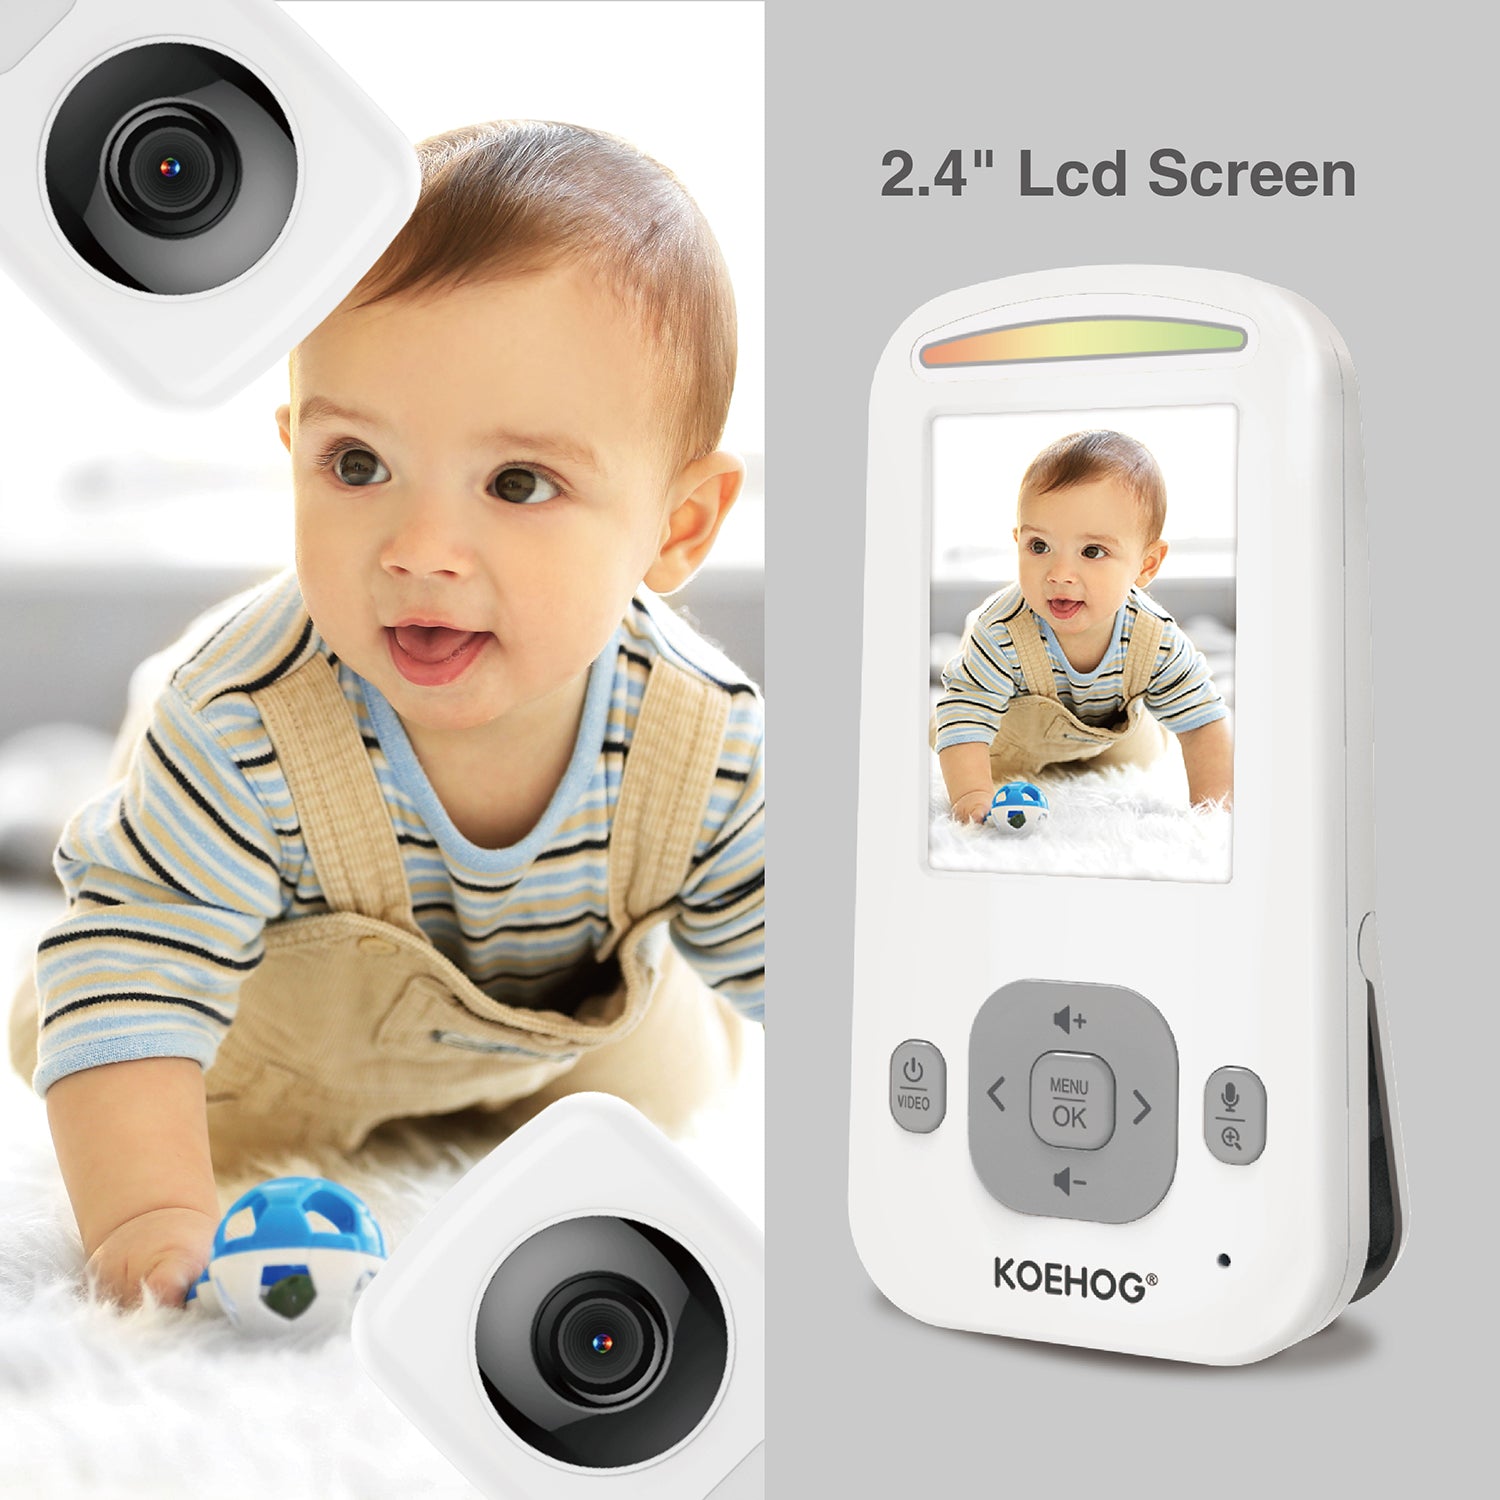 KOEHOG	K820 Video Baby Monitor